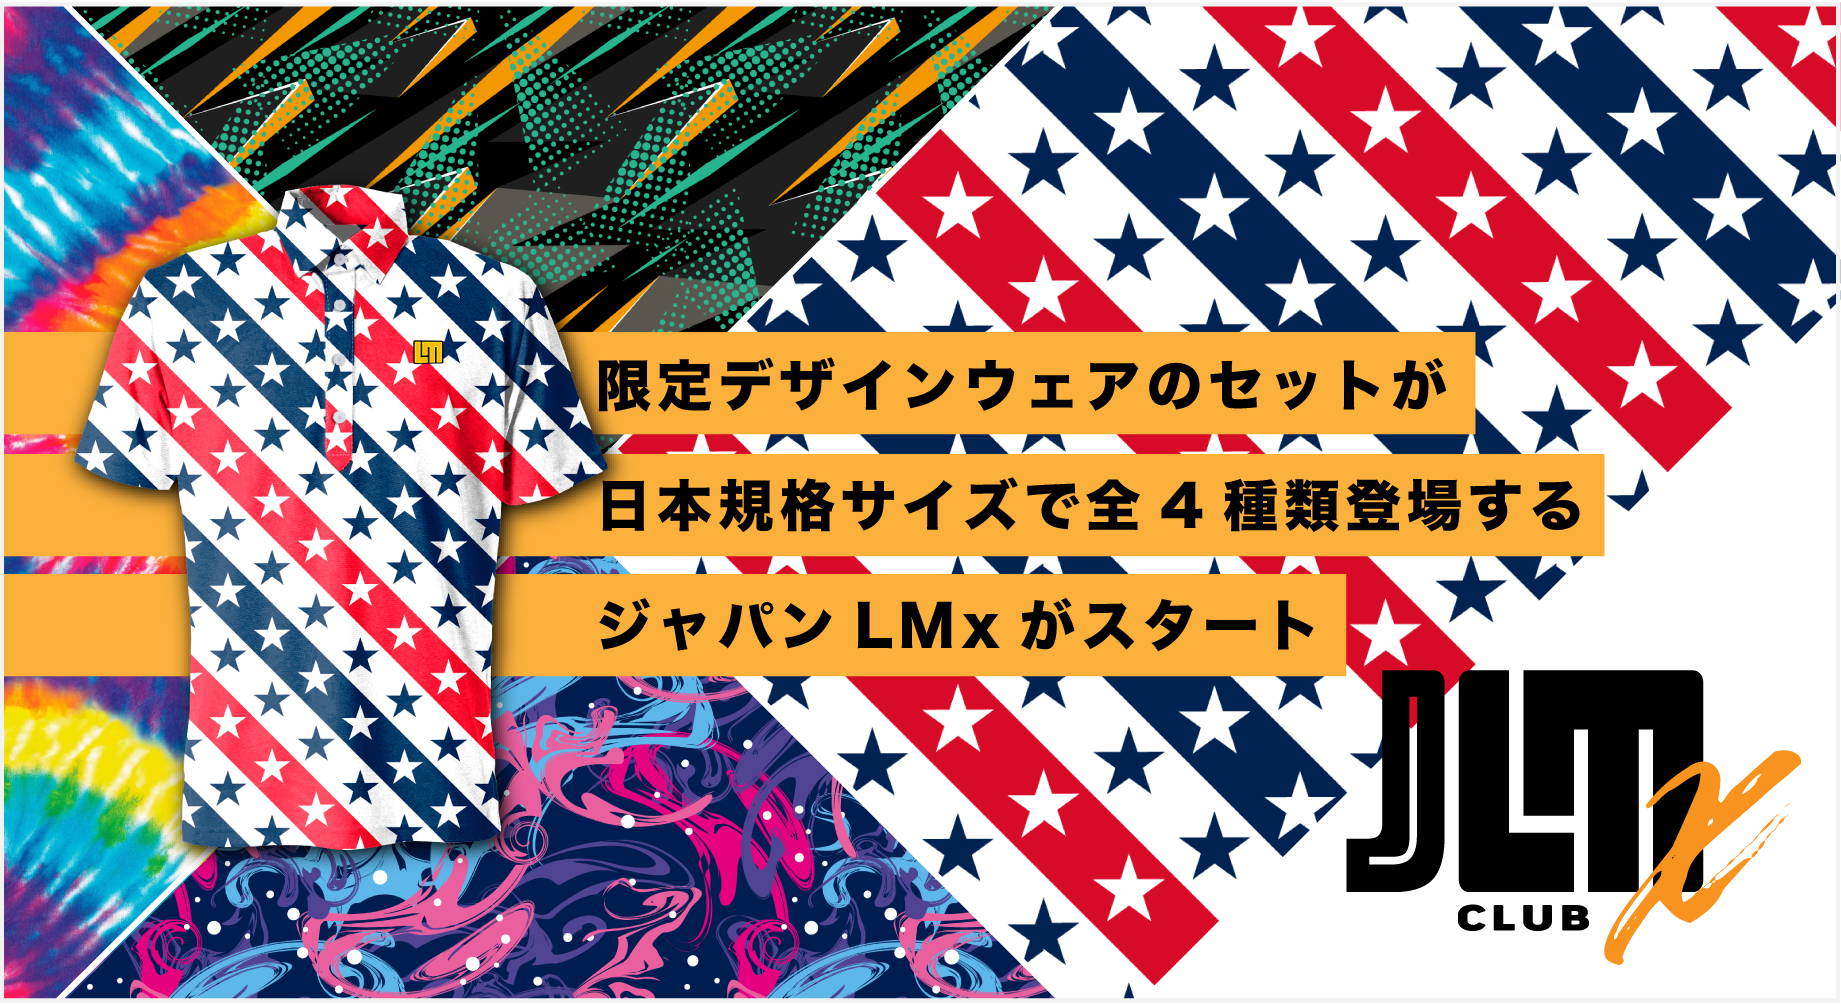 限定デザインウェアのセットが日本規格サイズで全4種類登場するジャパンLMxがスタート